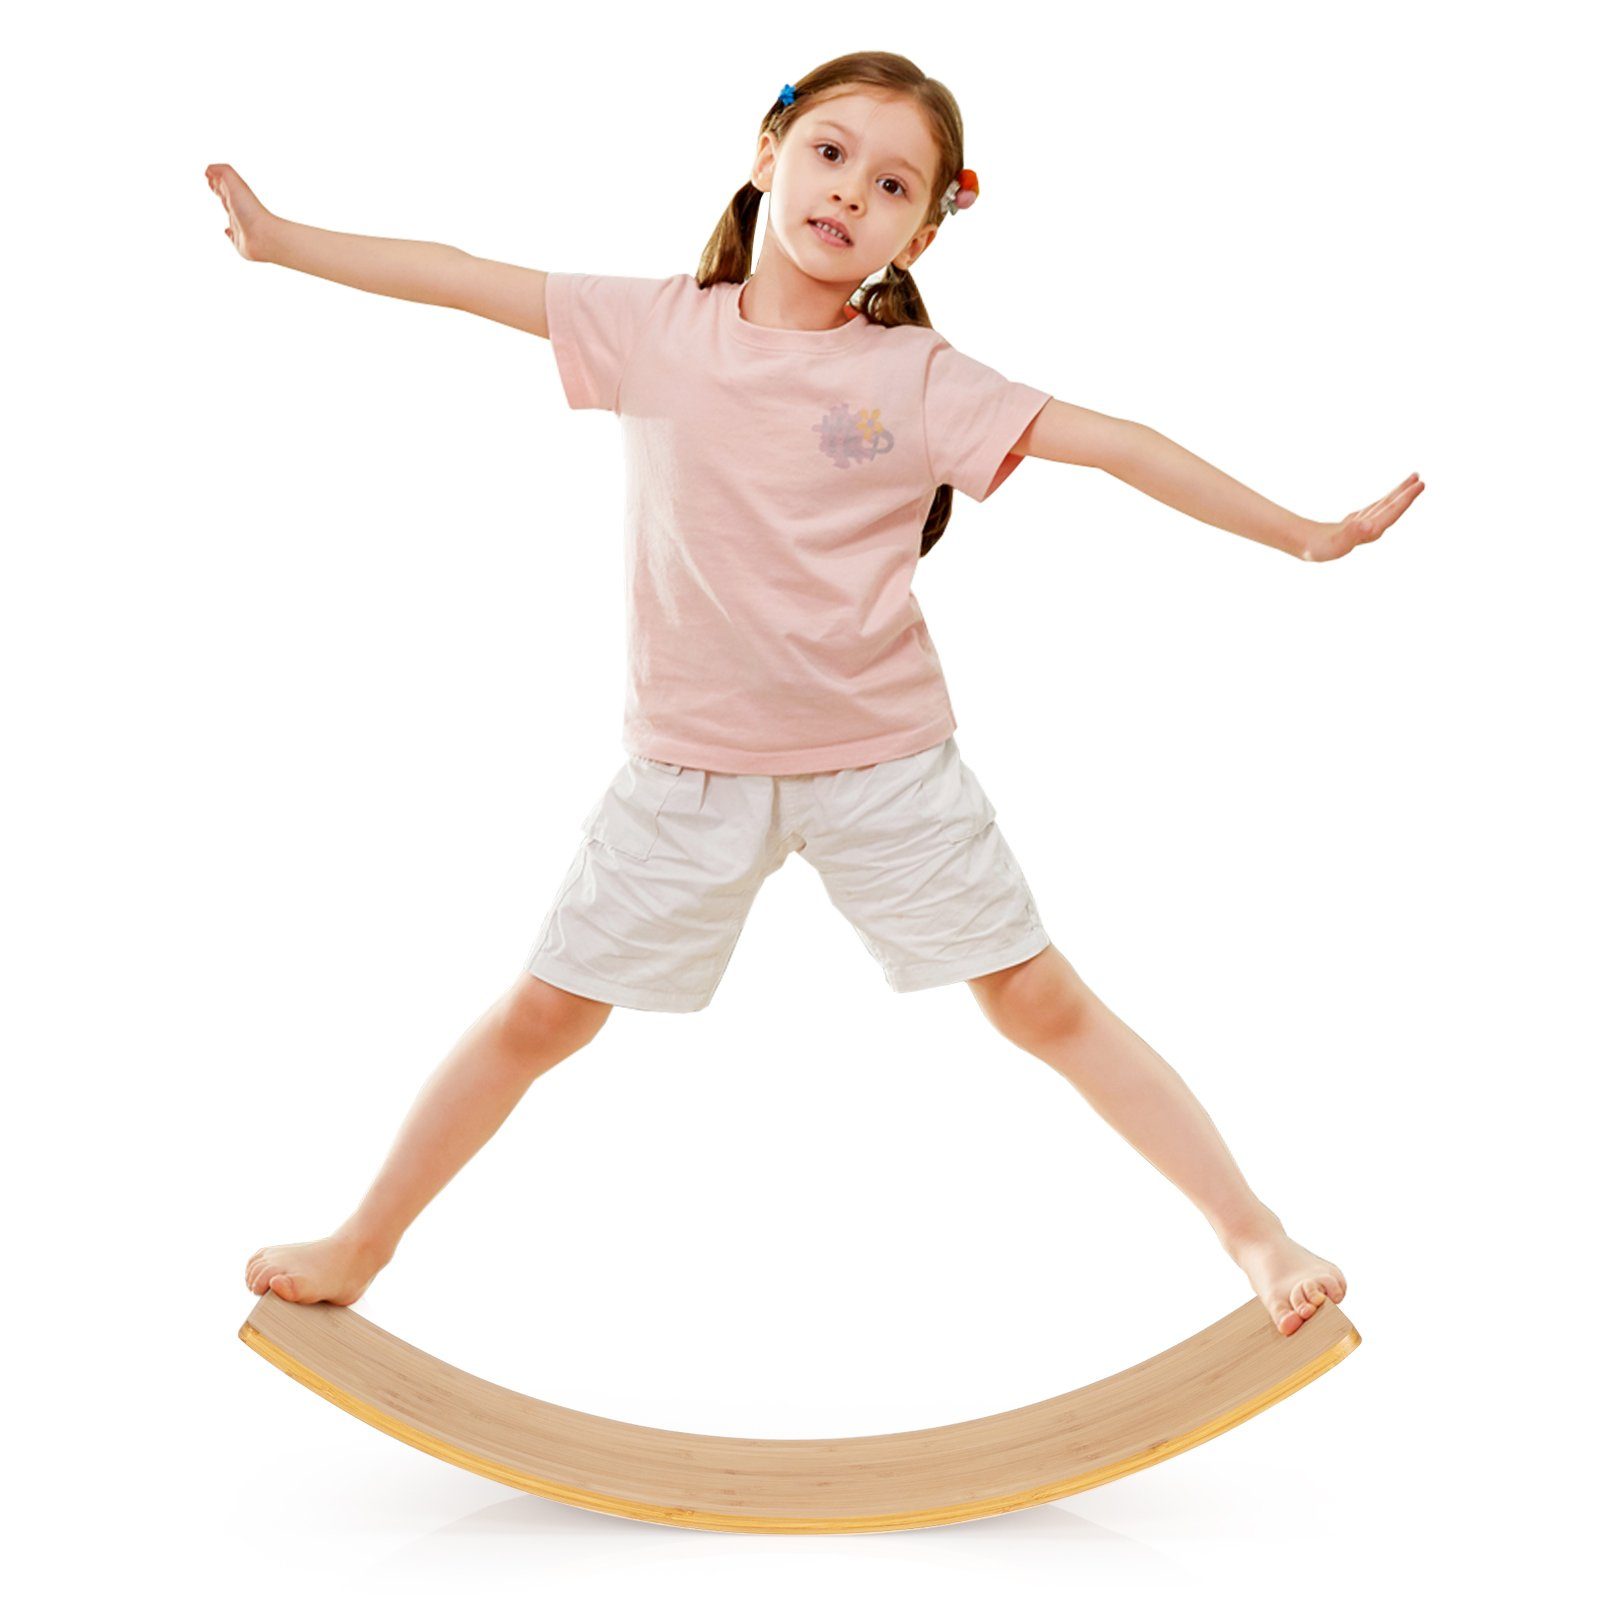 COSTWAY Balanceboard Balancierbrett, aus Bambus, bis 150kg, für Kinder und Erwachsene, 90 x 30cm